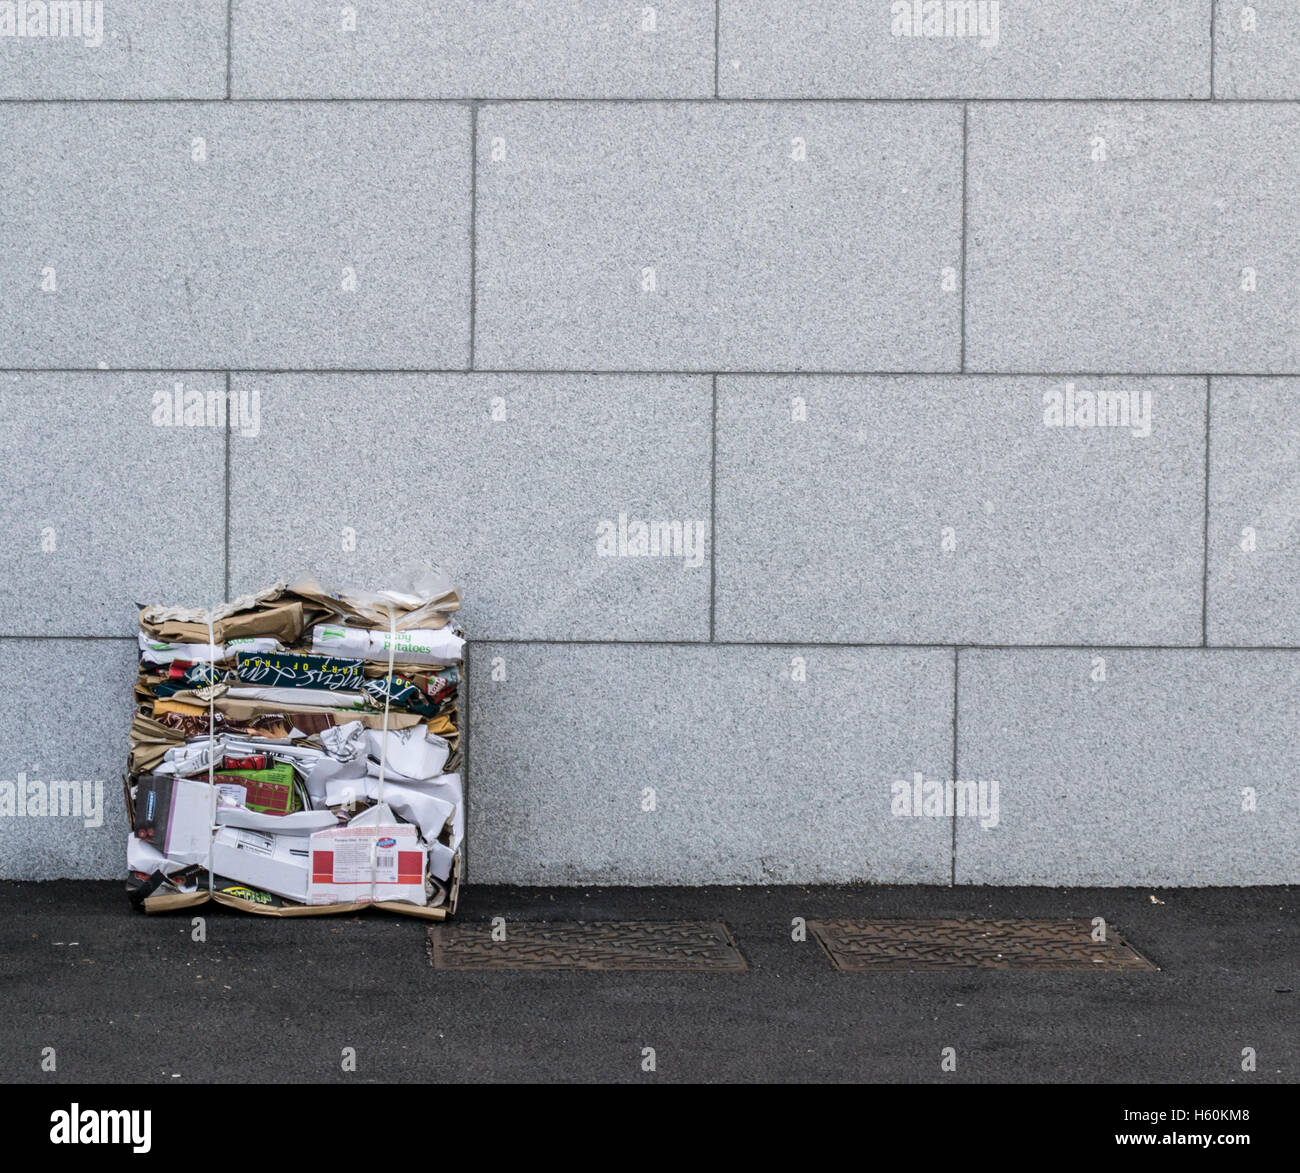 Recyclage papier et carton aplati est assis contre un mur de pierre grise avec les bouchons de vidange sur le chemin Banque D'Images